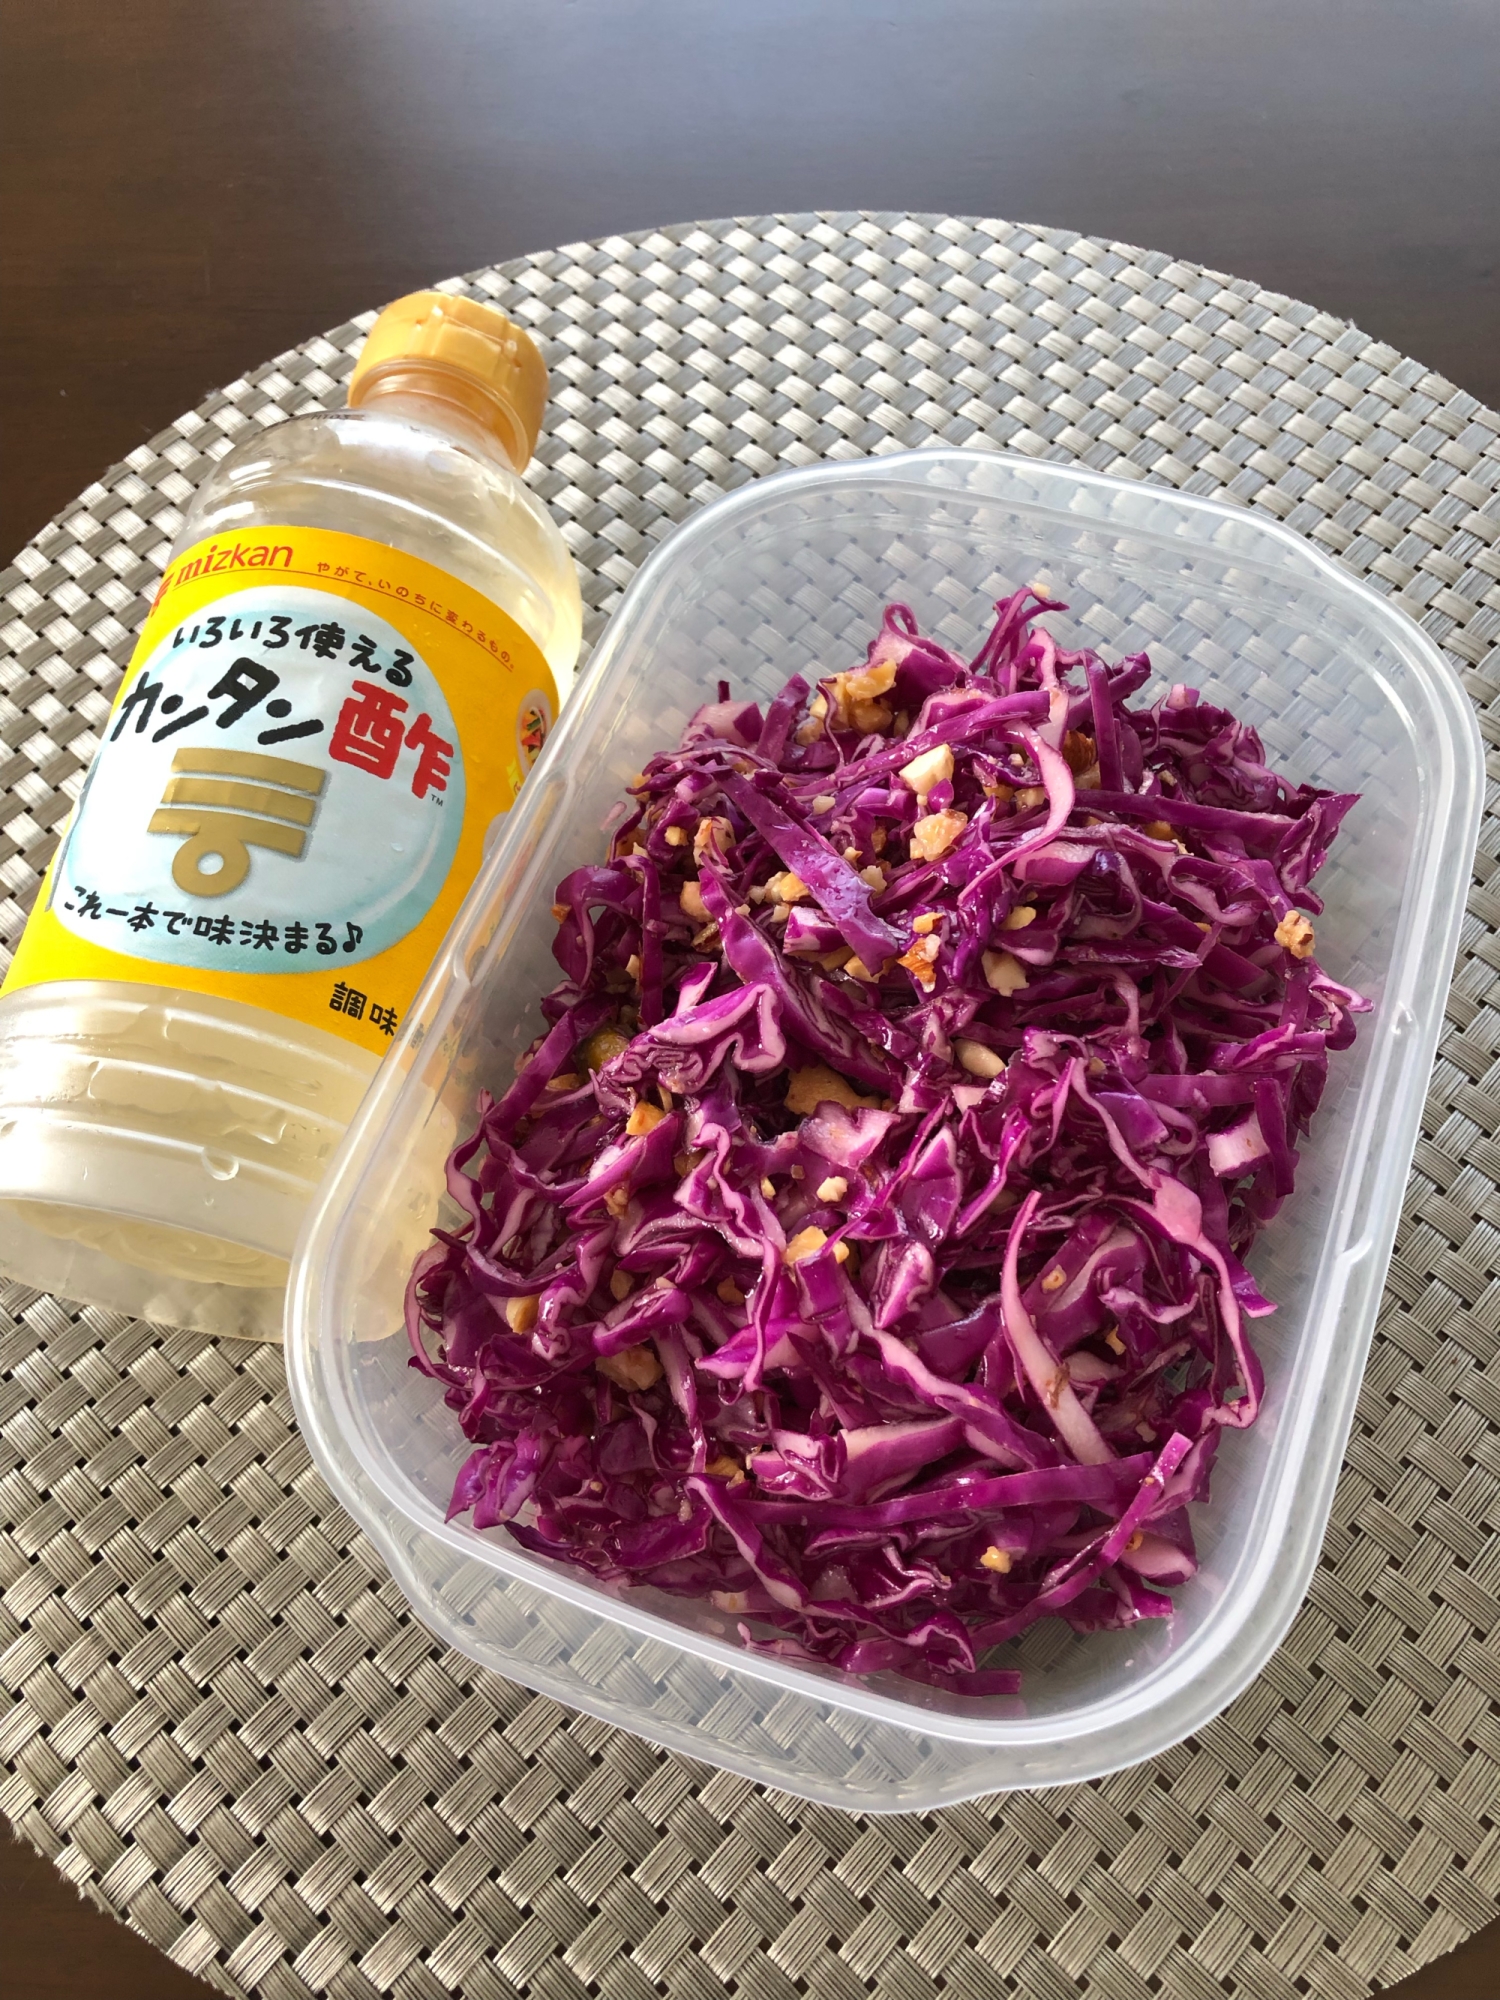 カンタン酢で作る 紫キャベツのマリネ レシピ 作り方 By Jewel1027 楽天レシピ